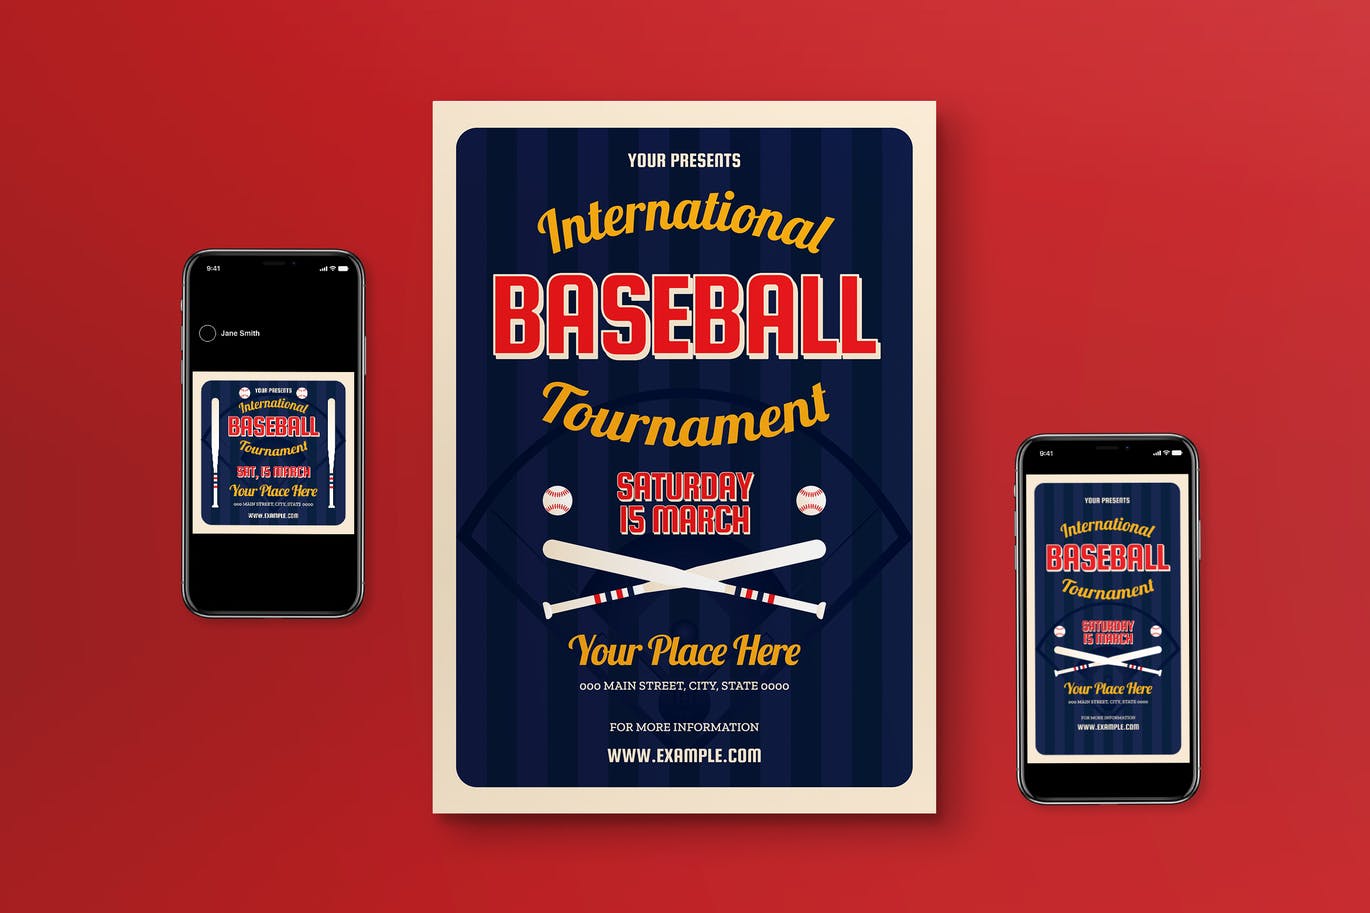 棒球比赛宣传单模板下载 Baseball Tournament Flyer Set 设计素材 第1张